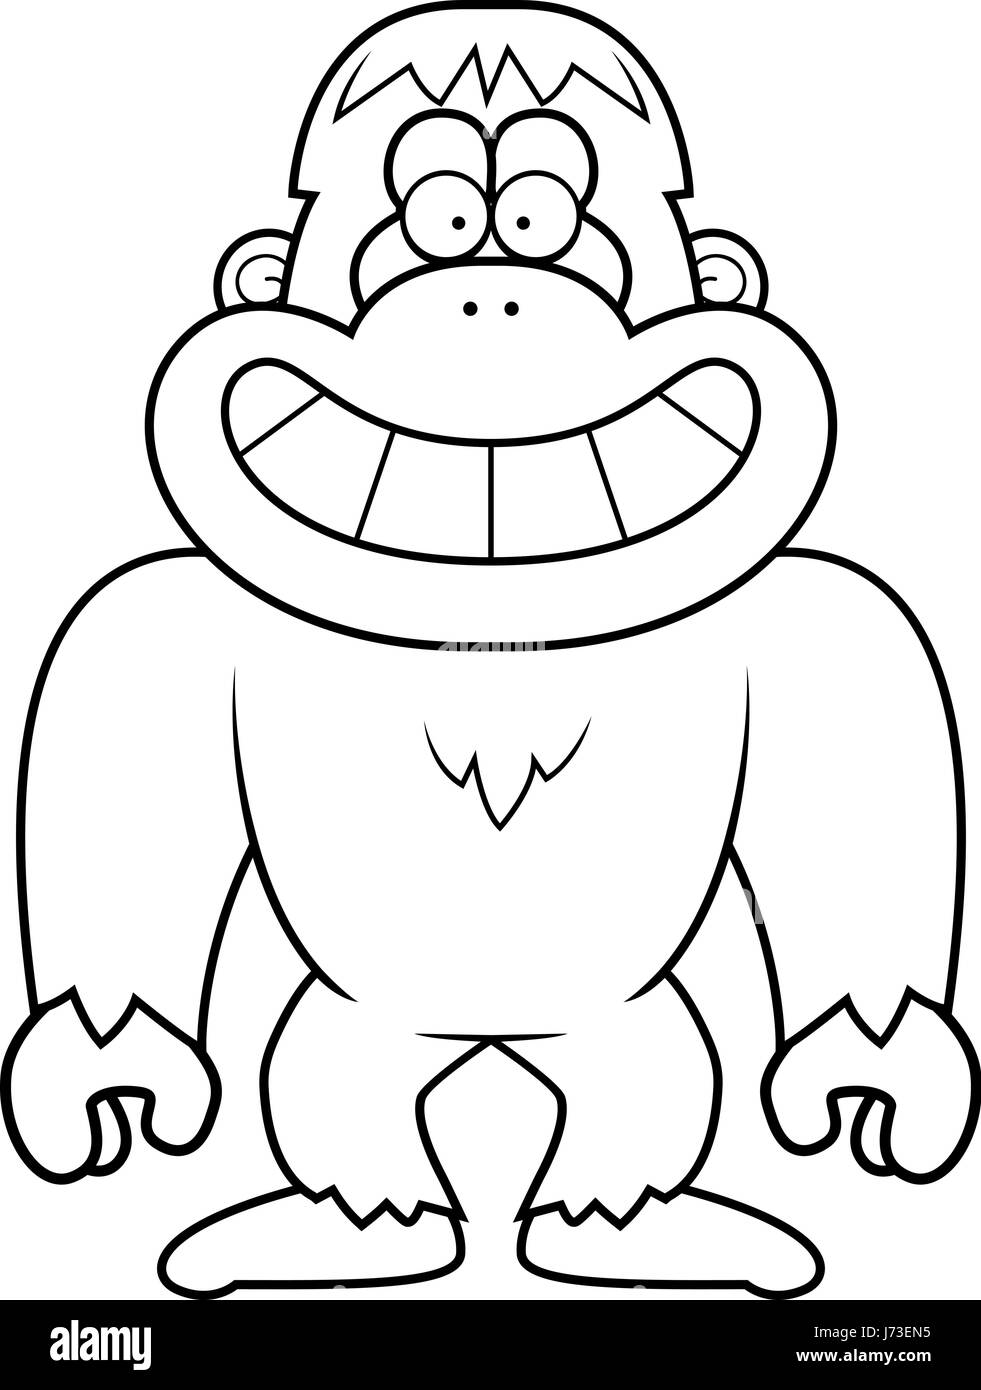 Ein Cartoon Illustration ein Bigfoot grinsend. Stock Vektor